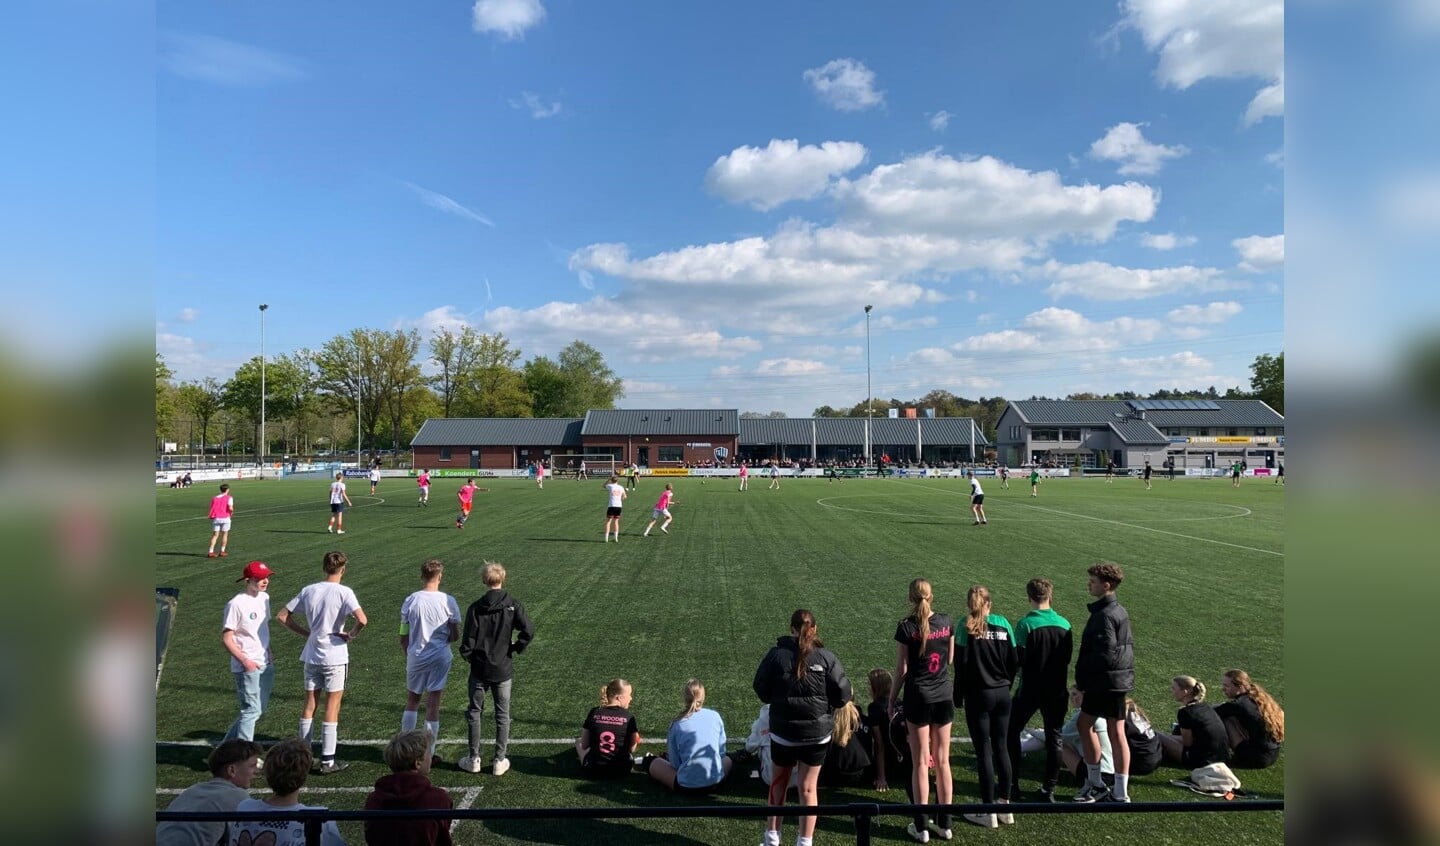 Voetbalplezier en spanning bij het HEN (Haaksbergen, Eibergen en Neede) 7 tegen 7 voetbaltoernooi van het Assink lyceum. Foto: PR